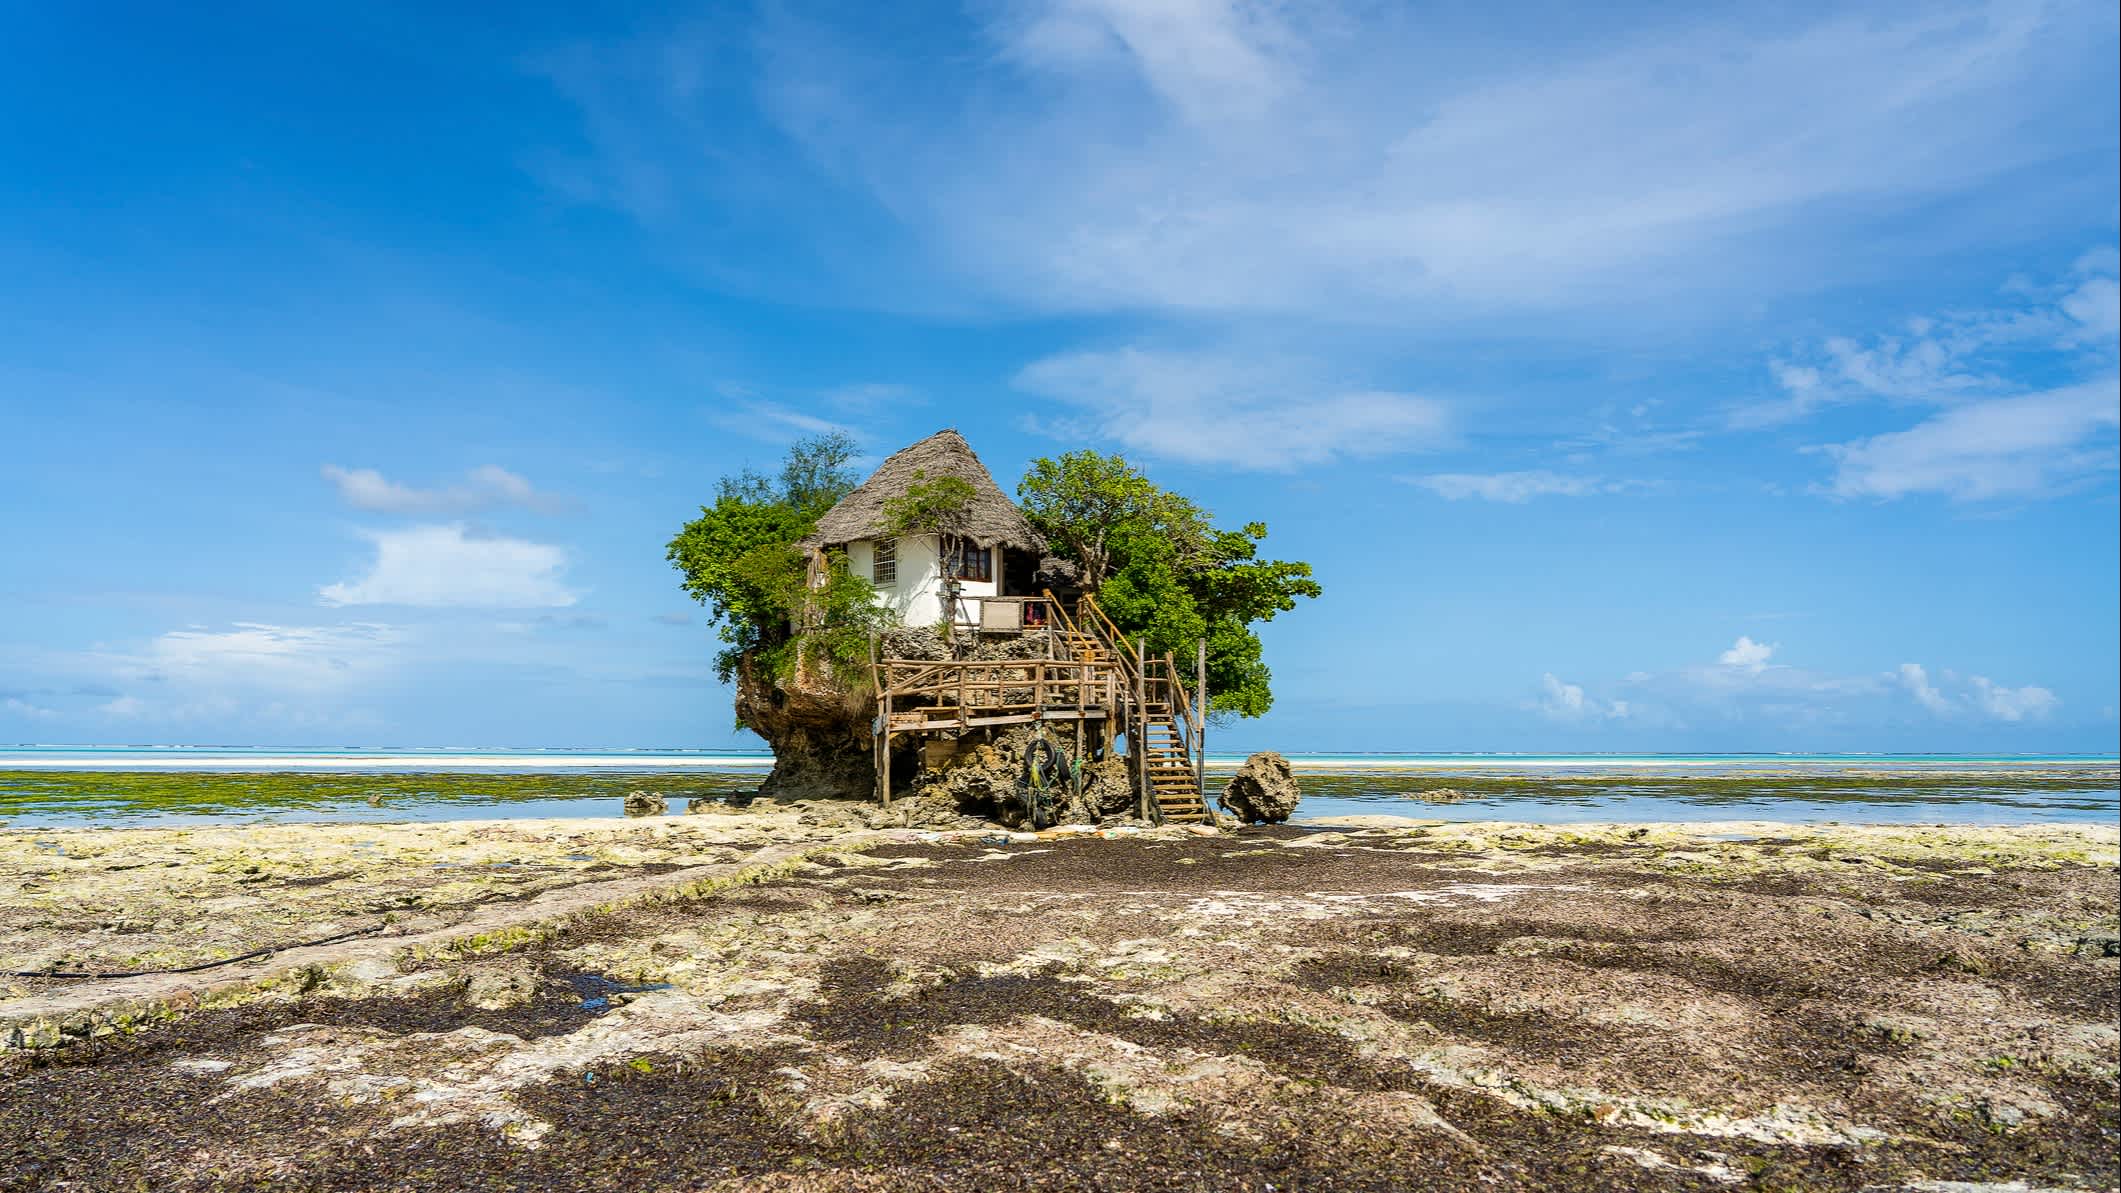 The Rock Restaurant sur la roche à marée basse sur l'île de Zanzibar, Tanzanie

